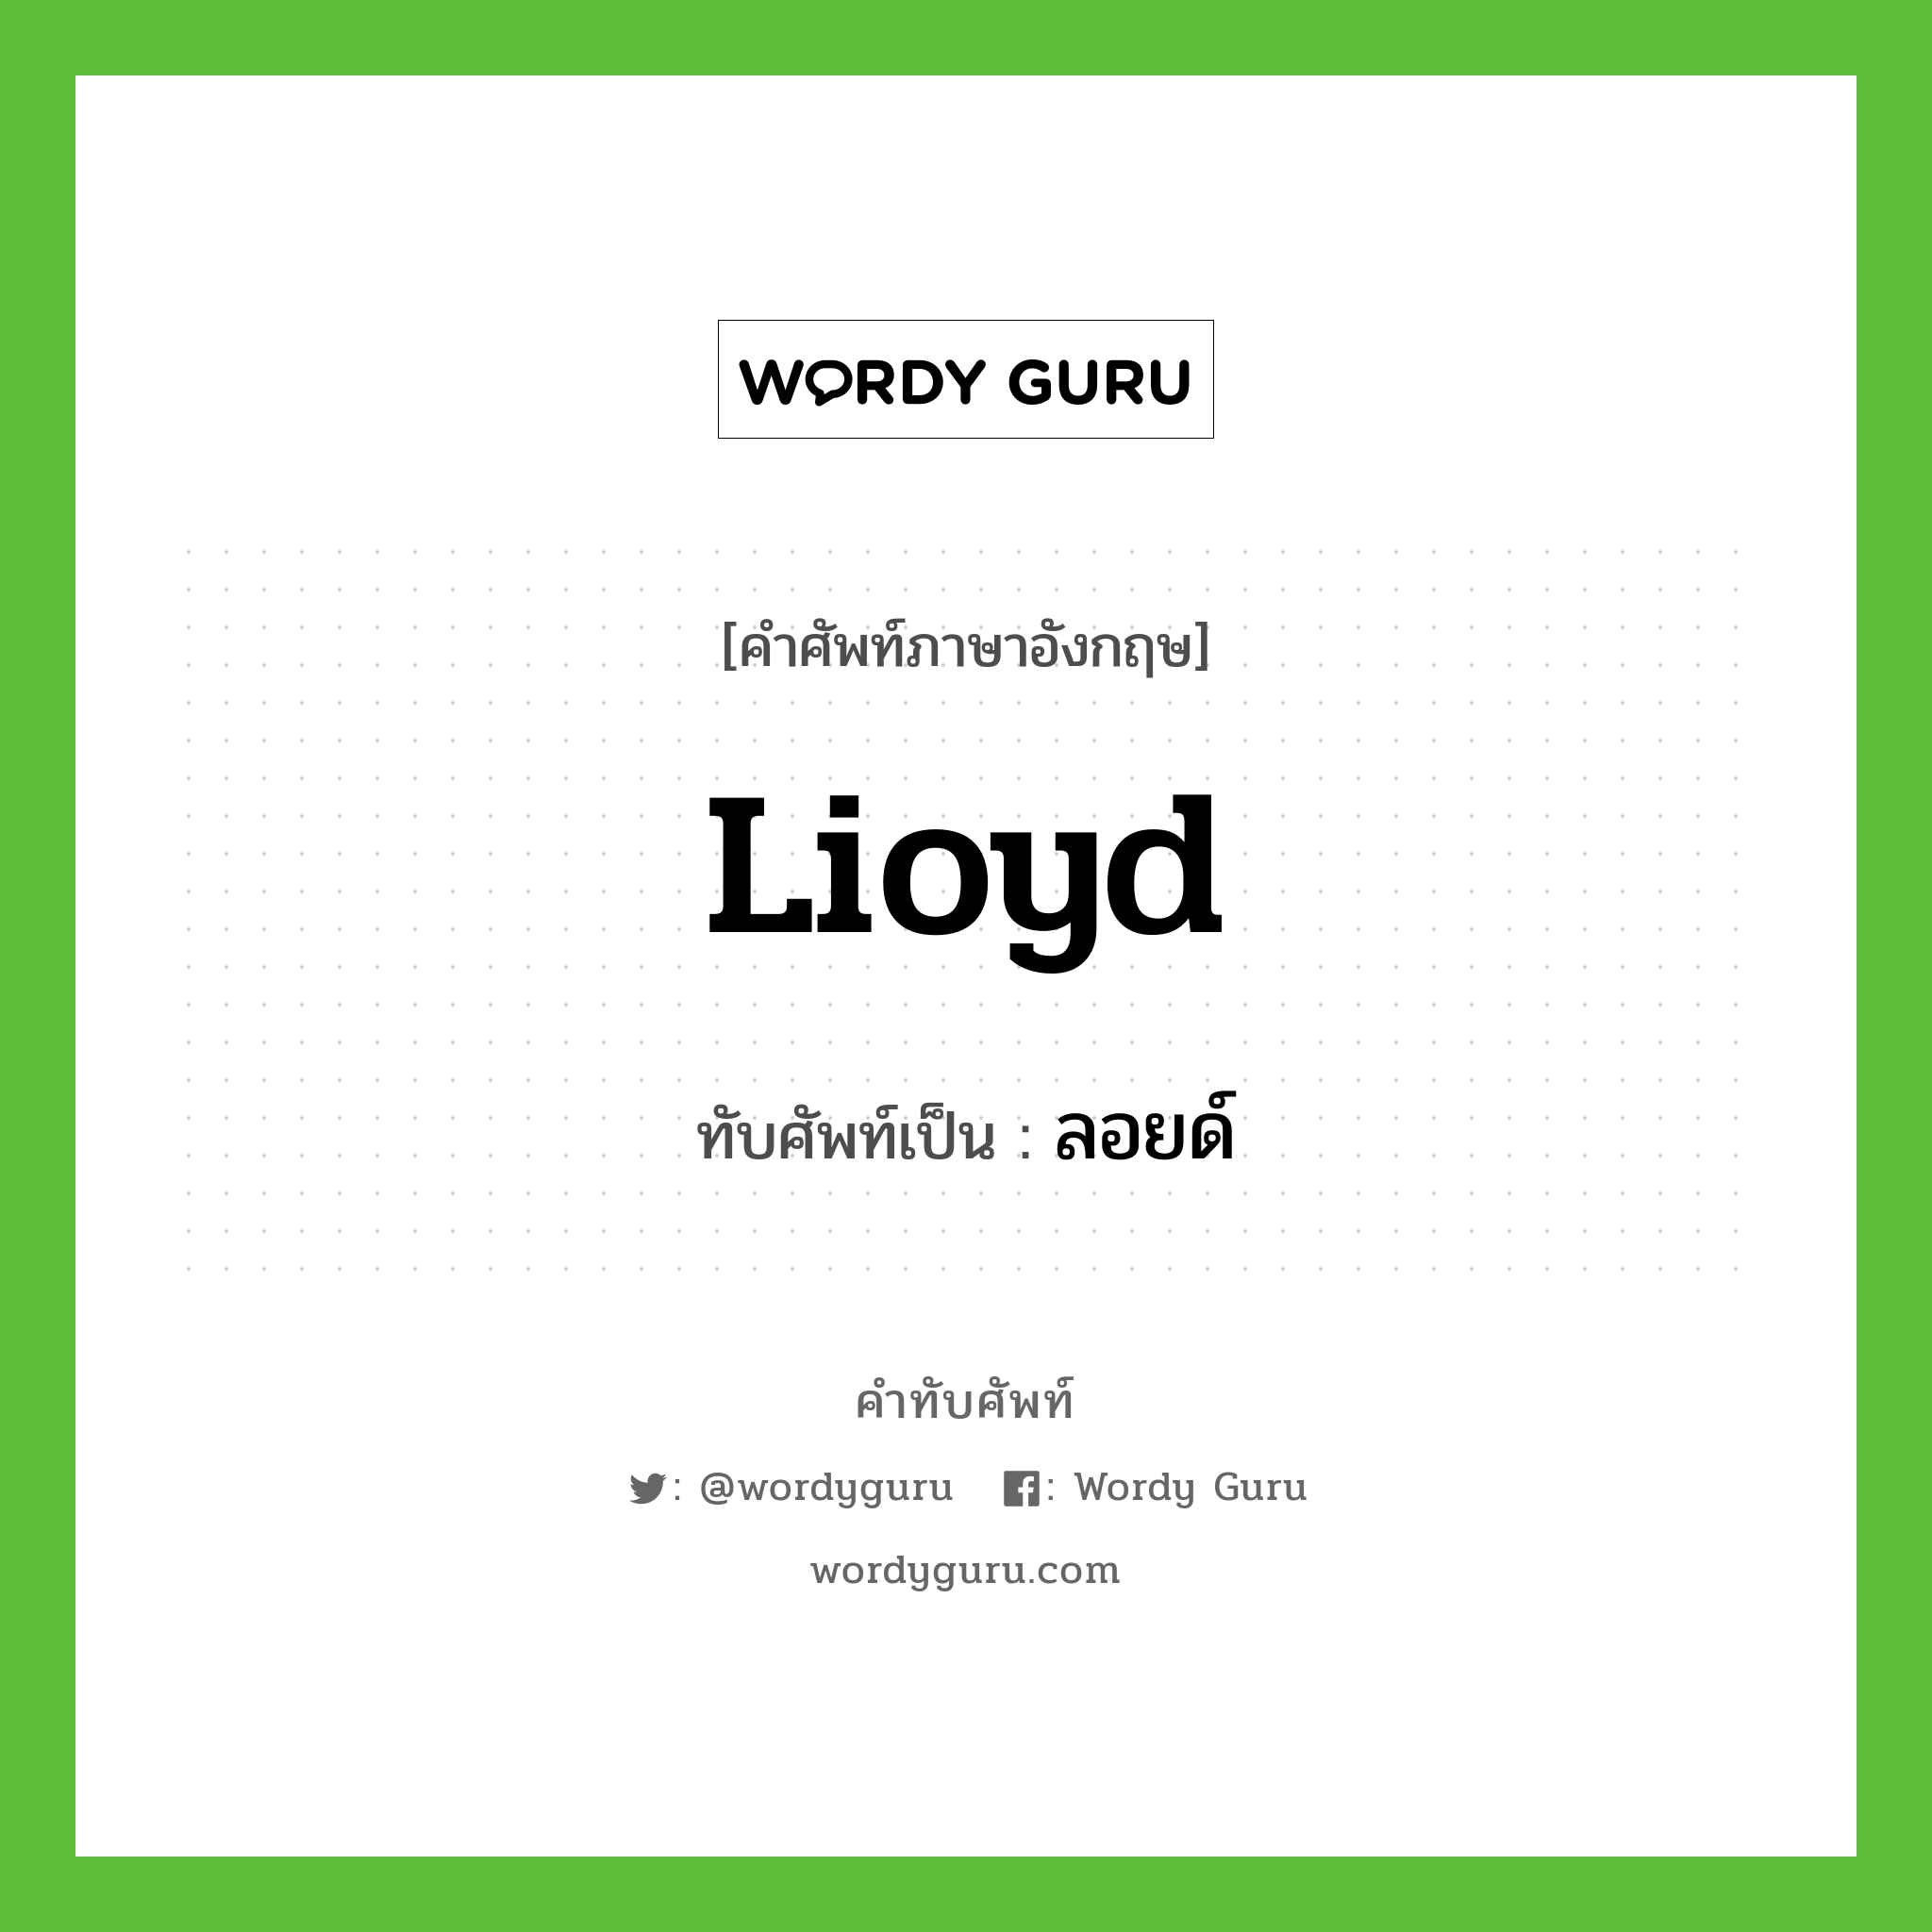 Lioyd เขียนเป็นคำไทยว่าอะไร?, คำศัพท์ภาษาอังกฤษ Lioyd ทับศัพท์เป็น ลอยด์